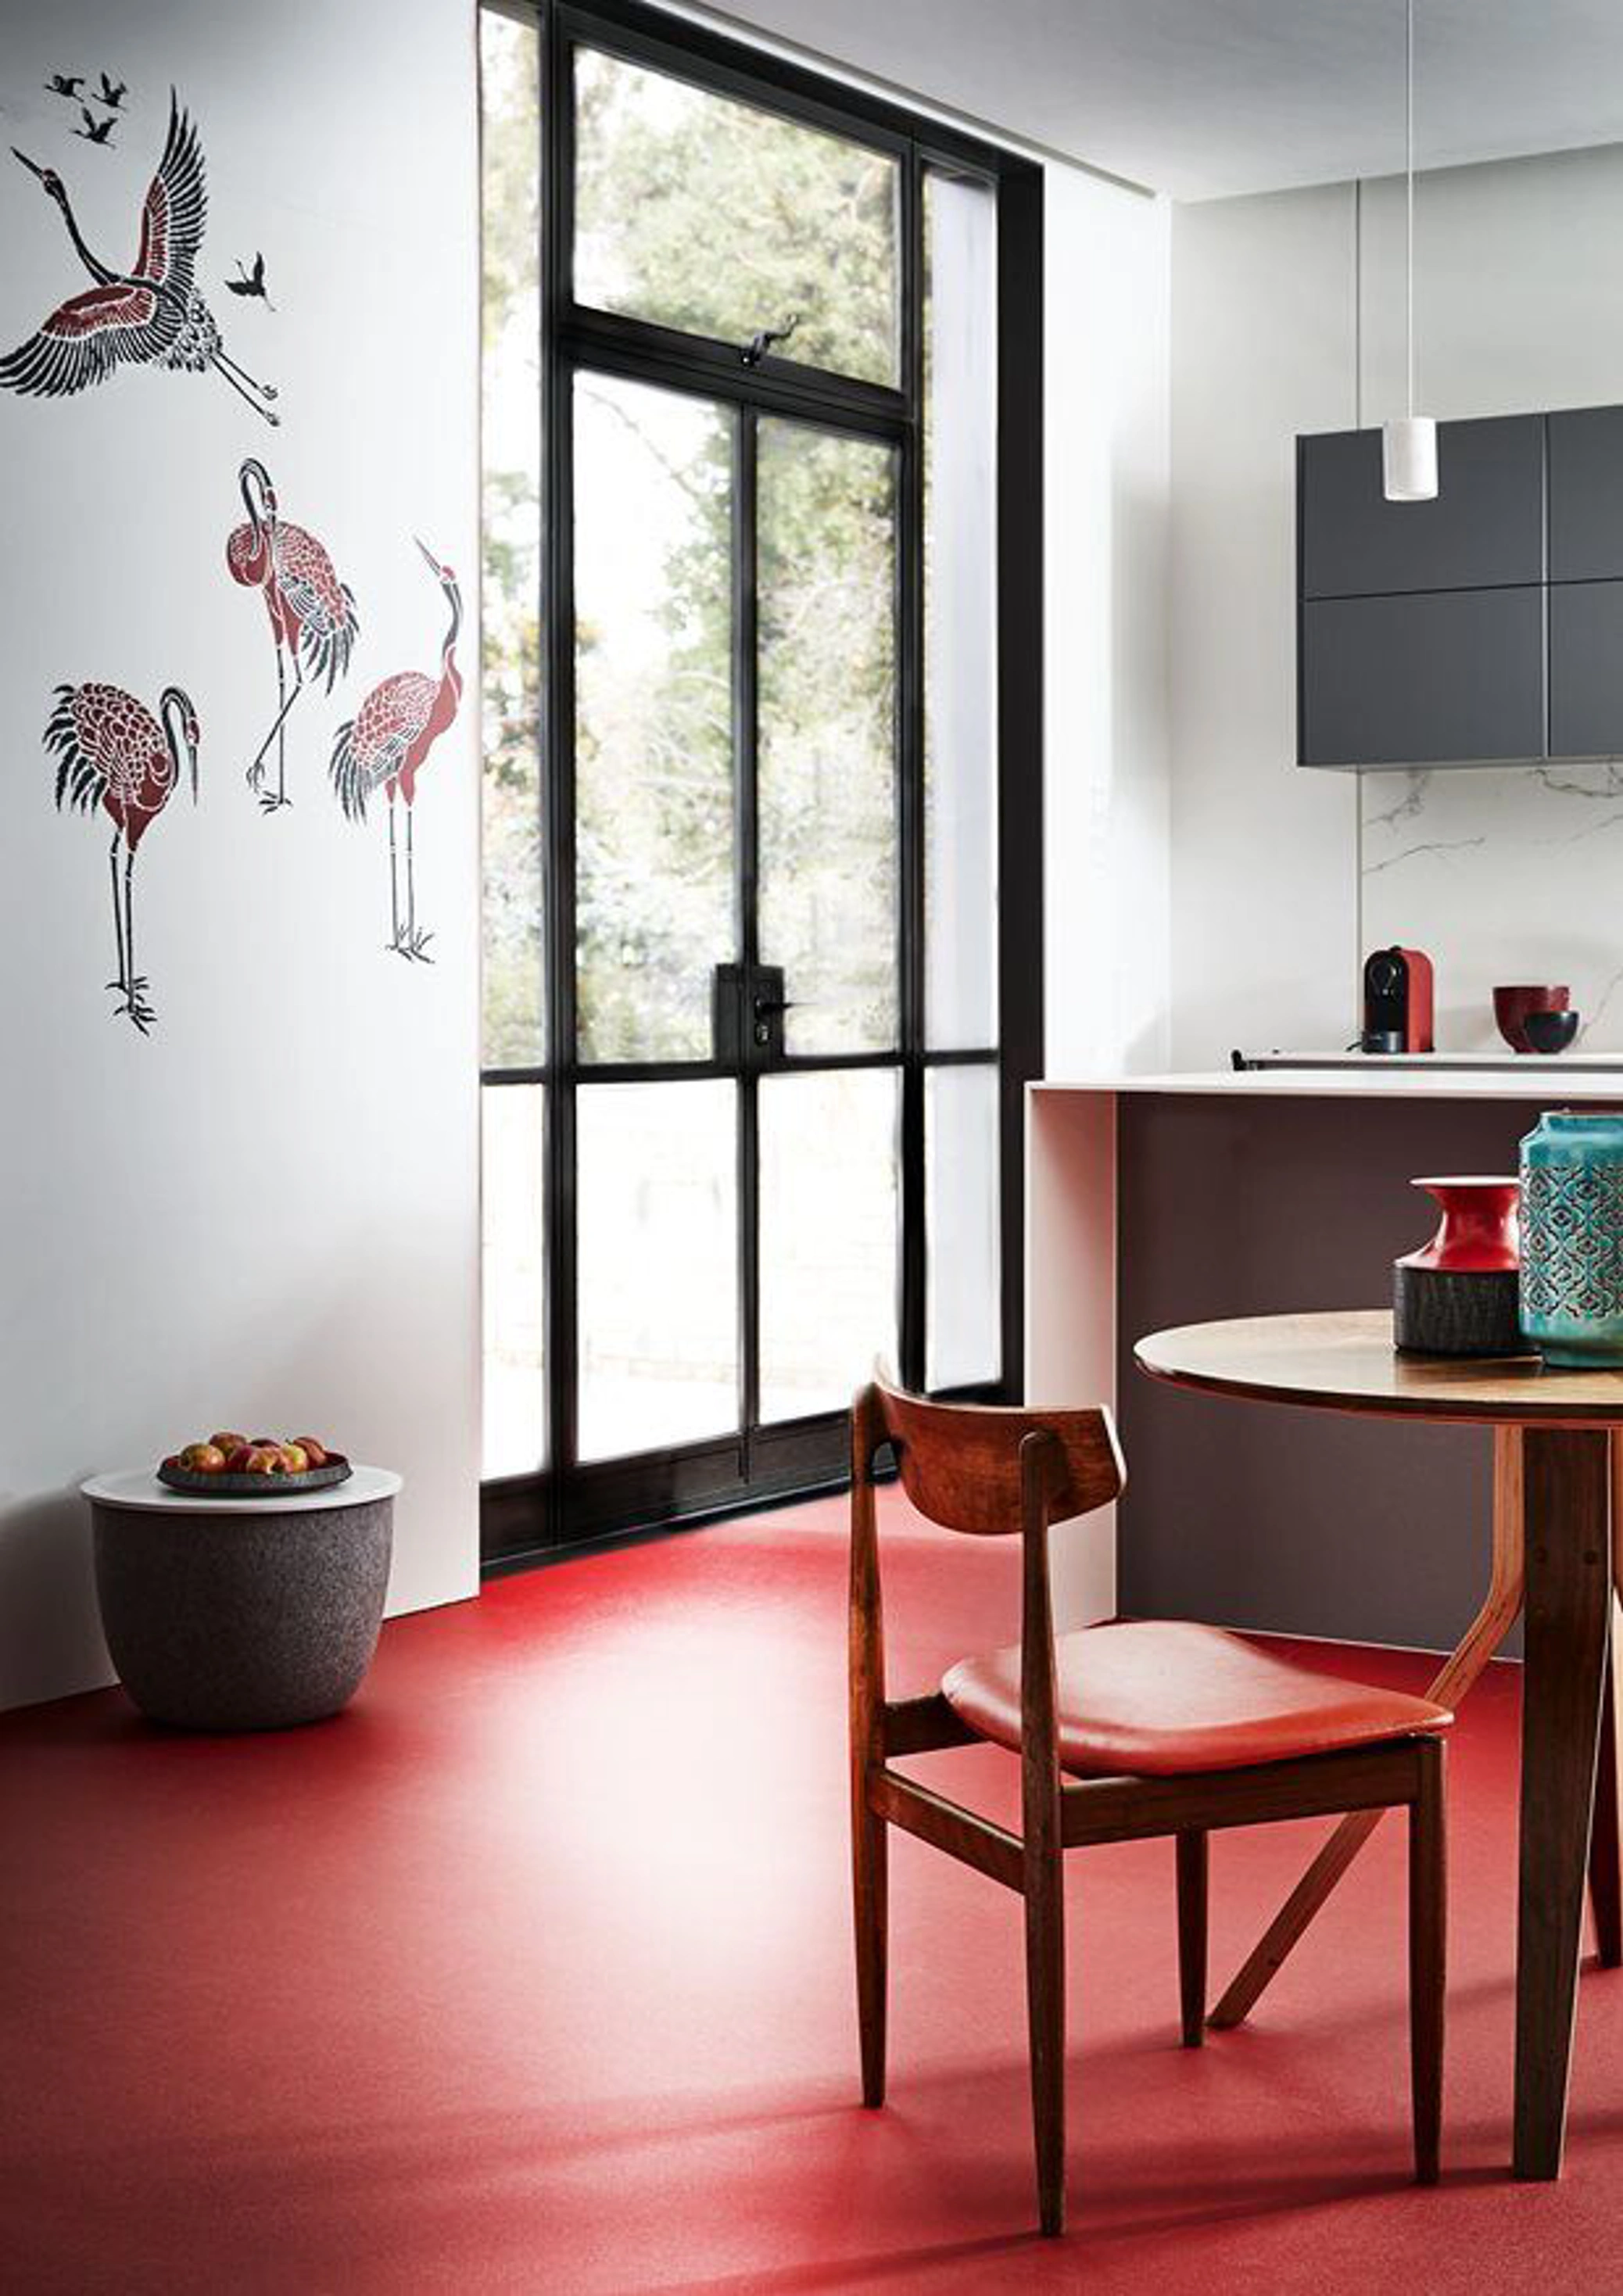 Modern kitchen with red flooring 